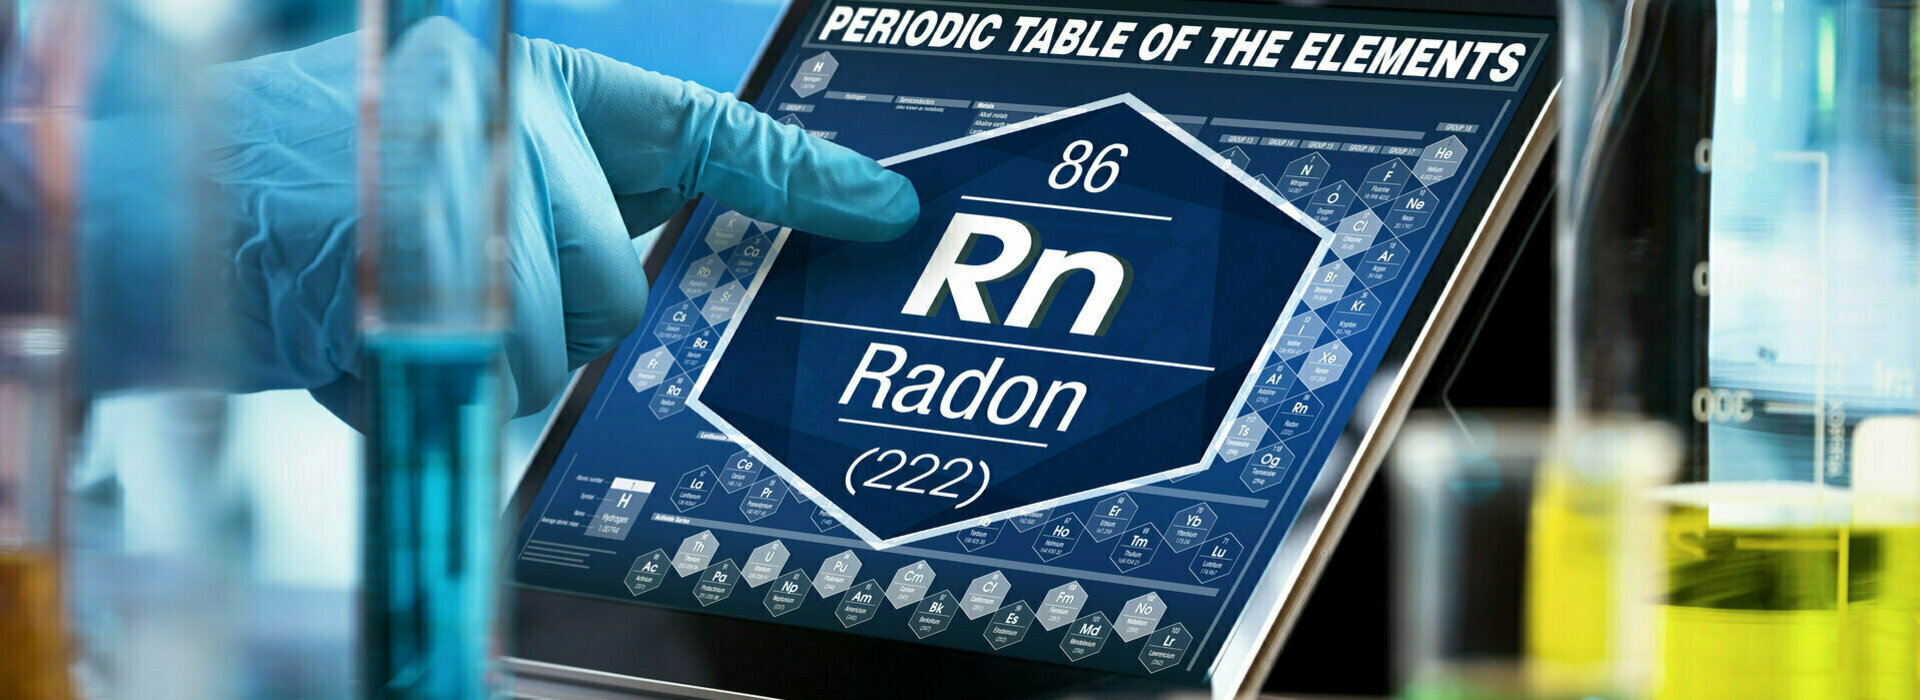 Où trouve-t-on le gaz radon ?